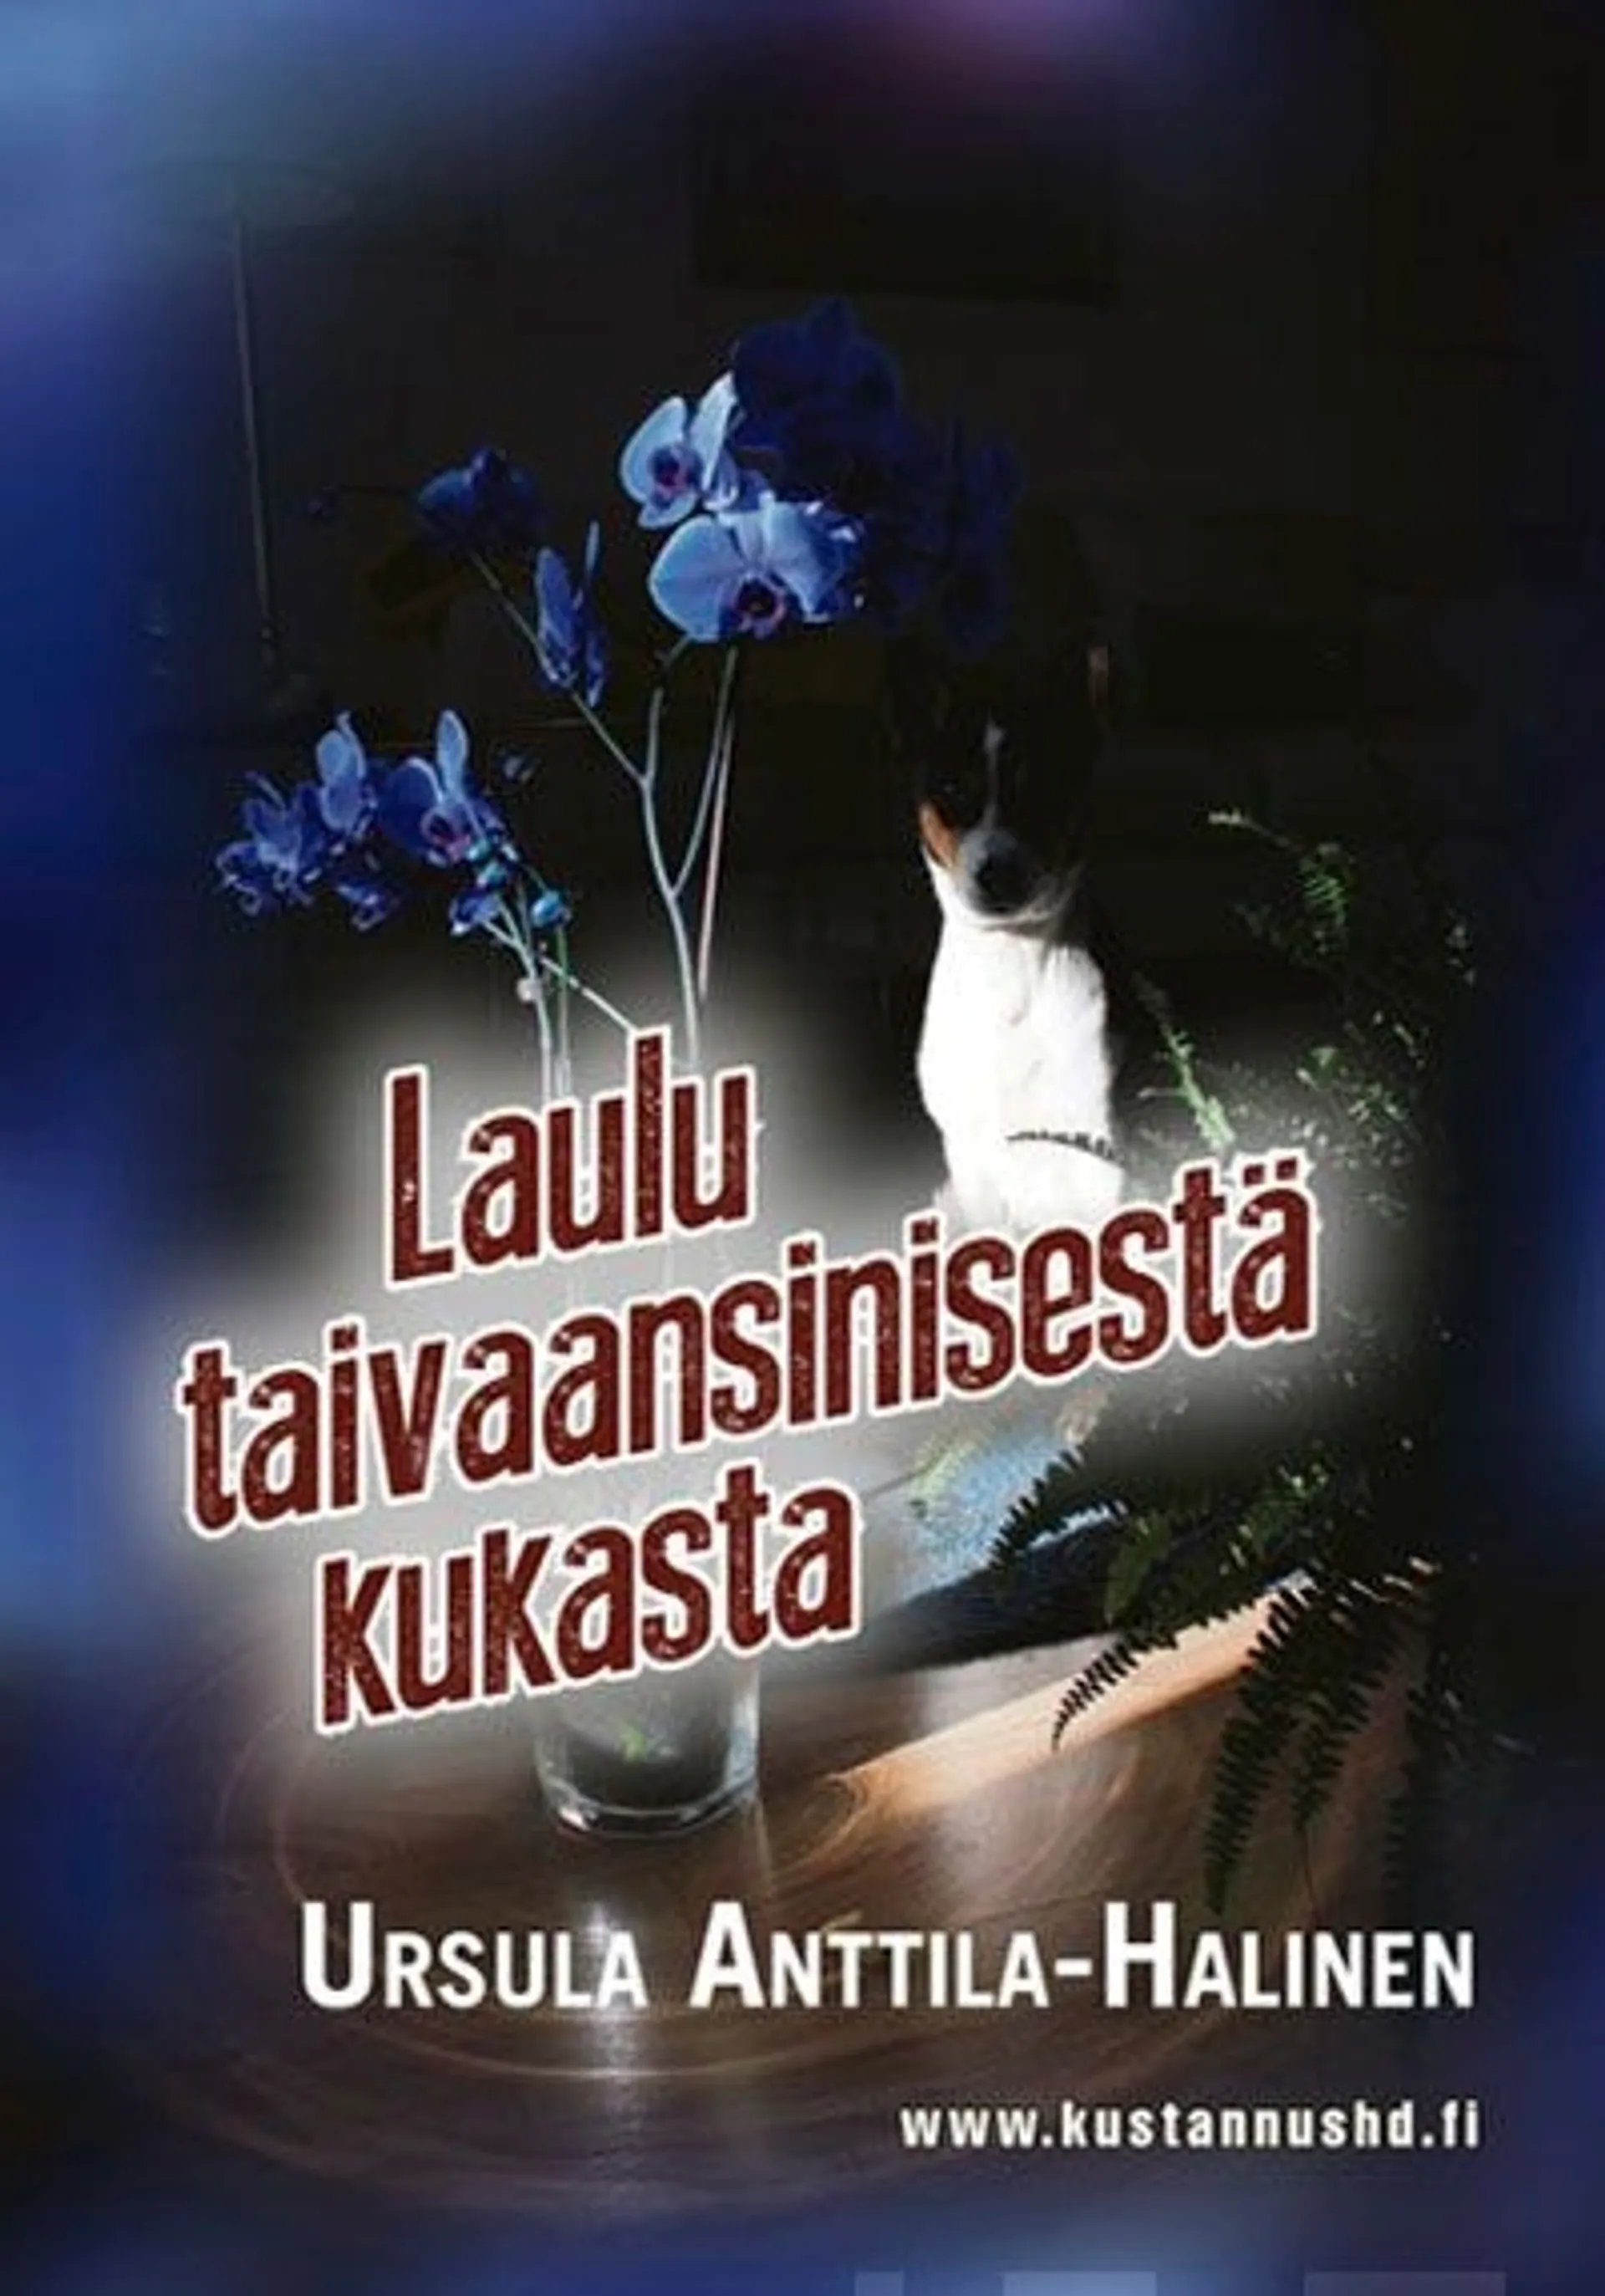 Anttila-Halinen, Laulu taivaansinisestä kukasta